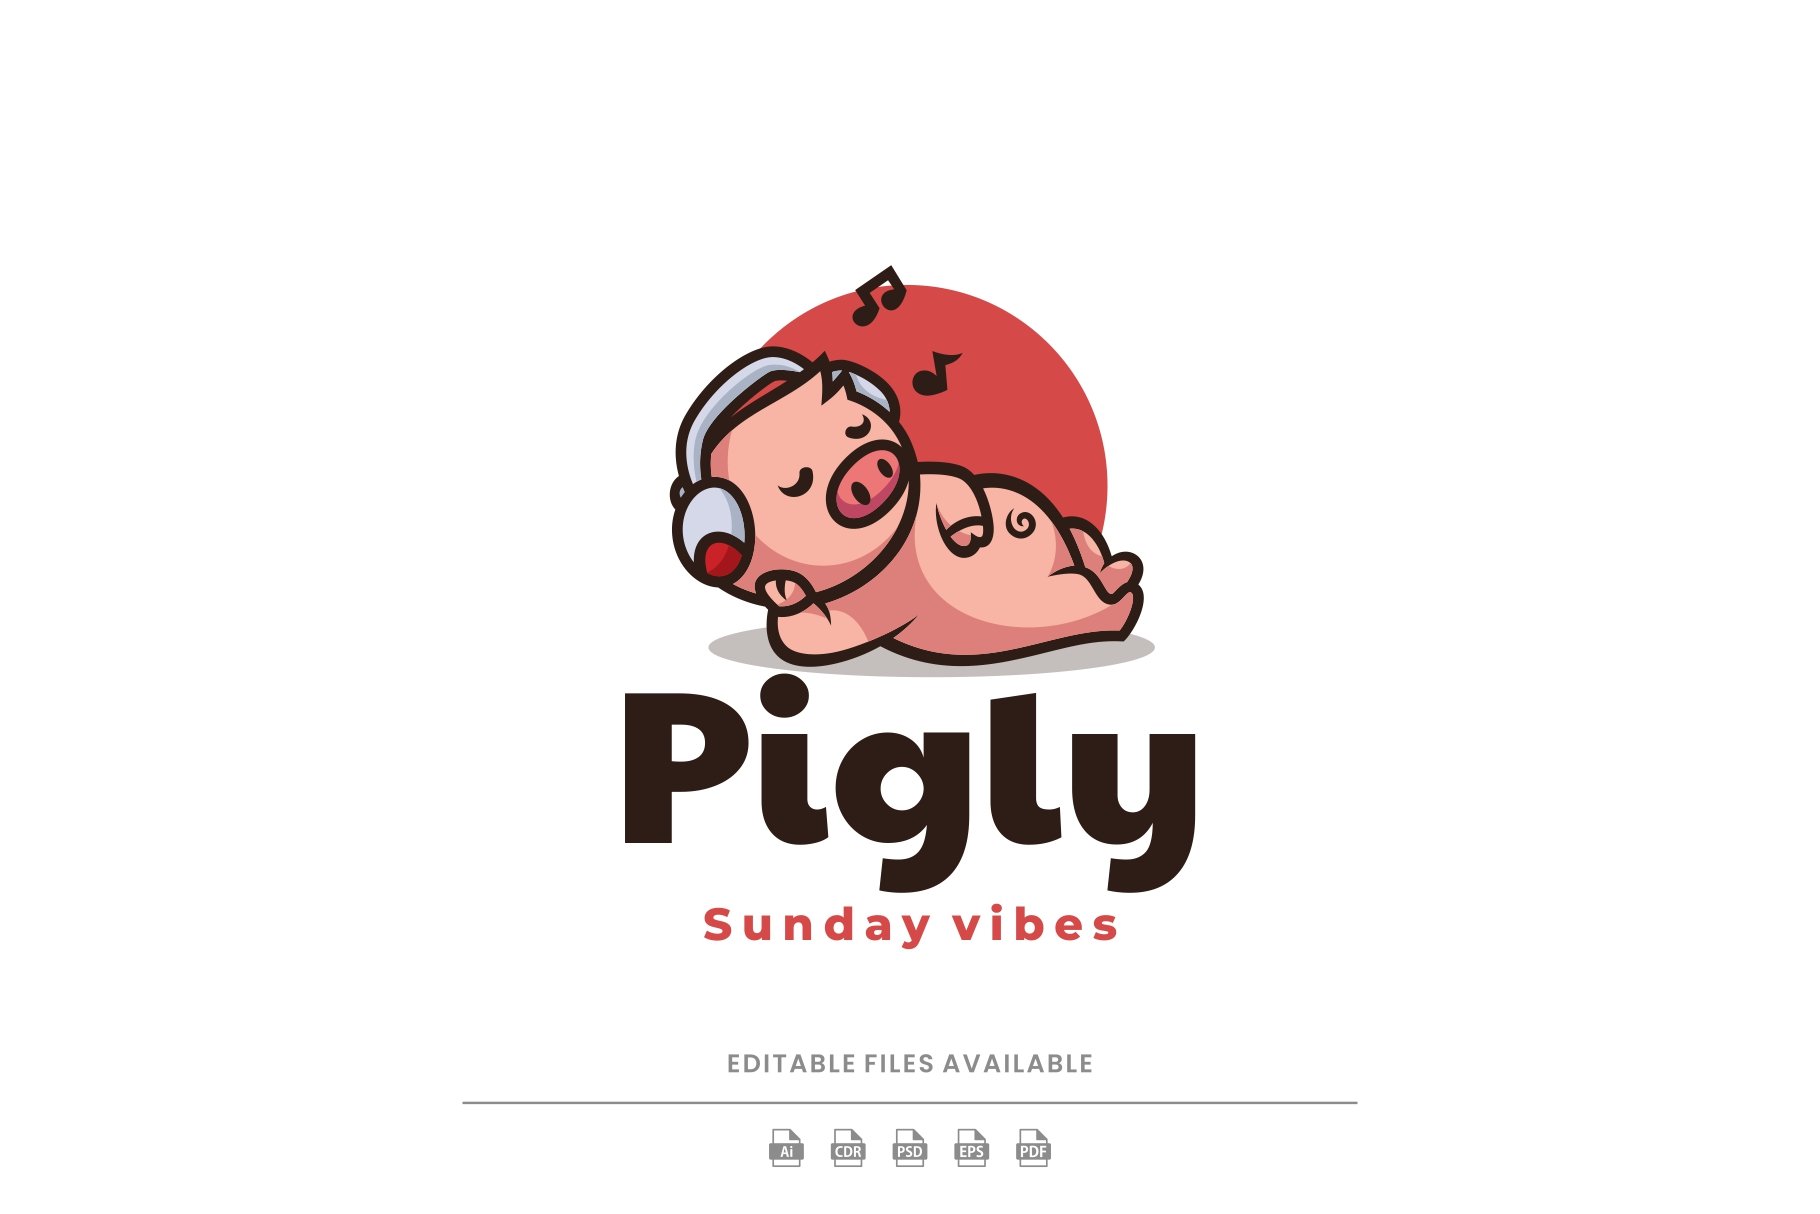 Relax Pig Mascot Cartoon Logo cover image.